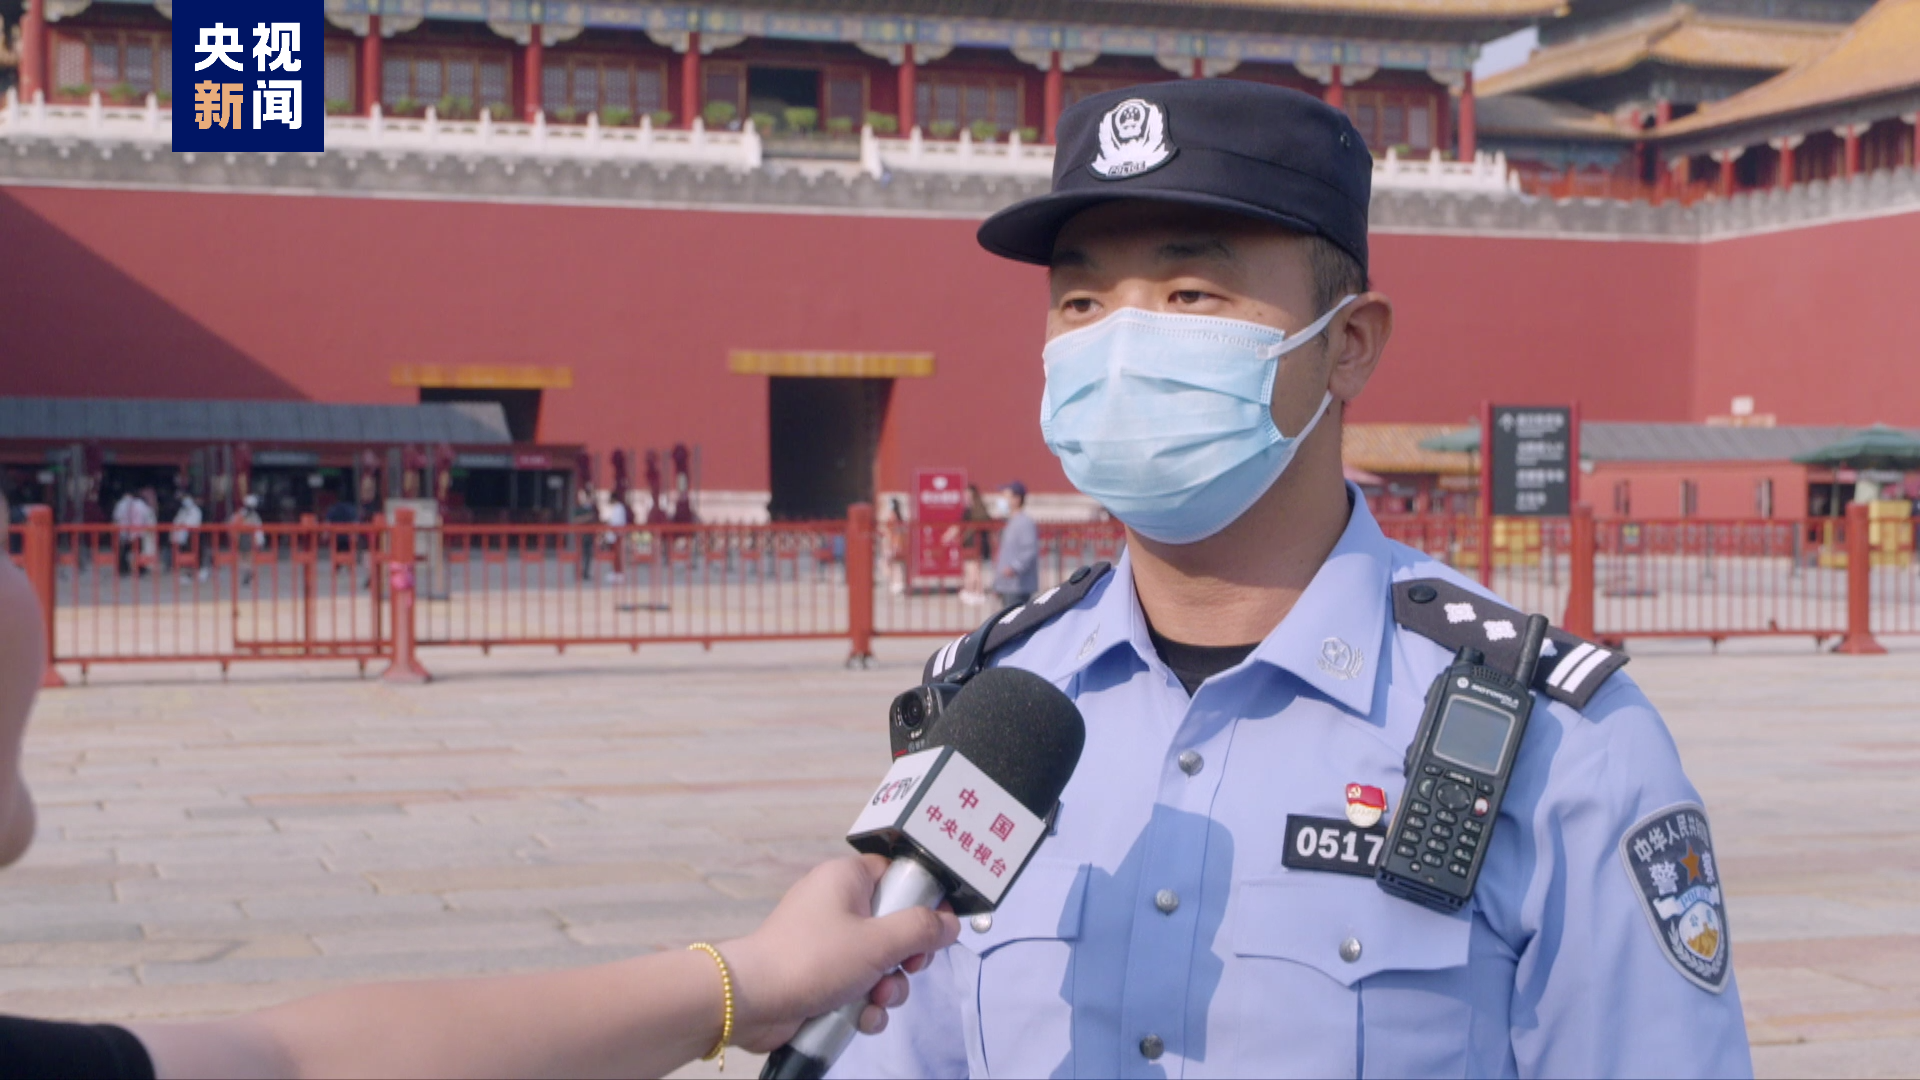 国庆期间天安门地区需预约入场 北京警方发布安全提示